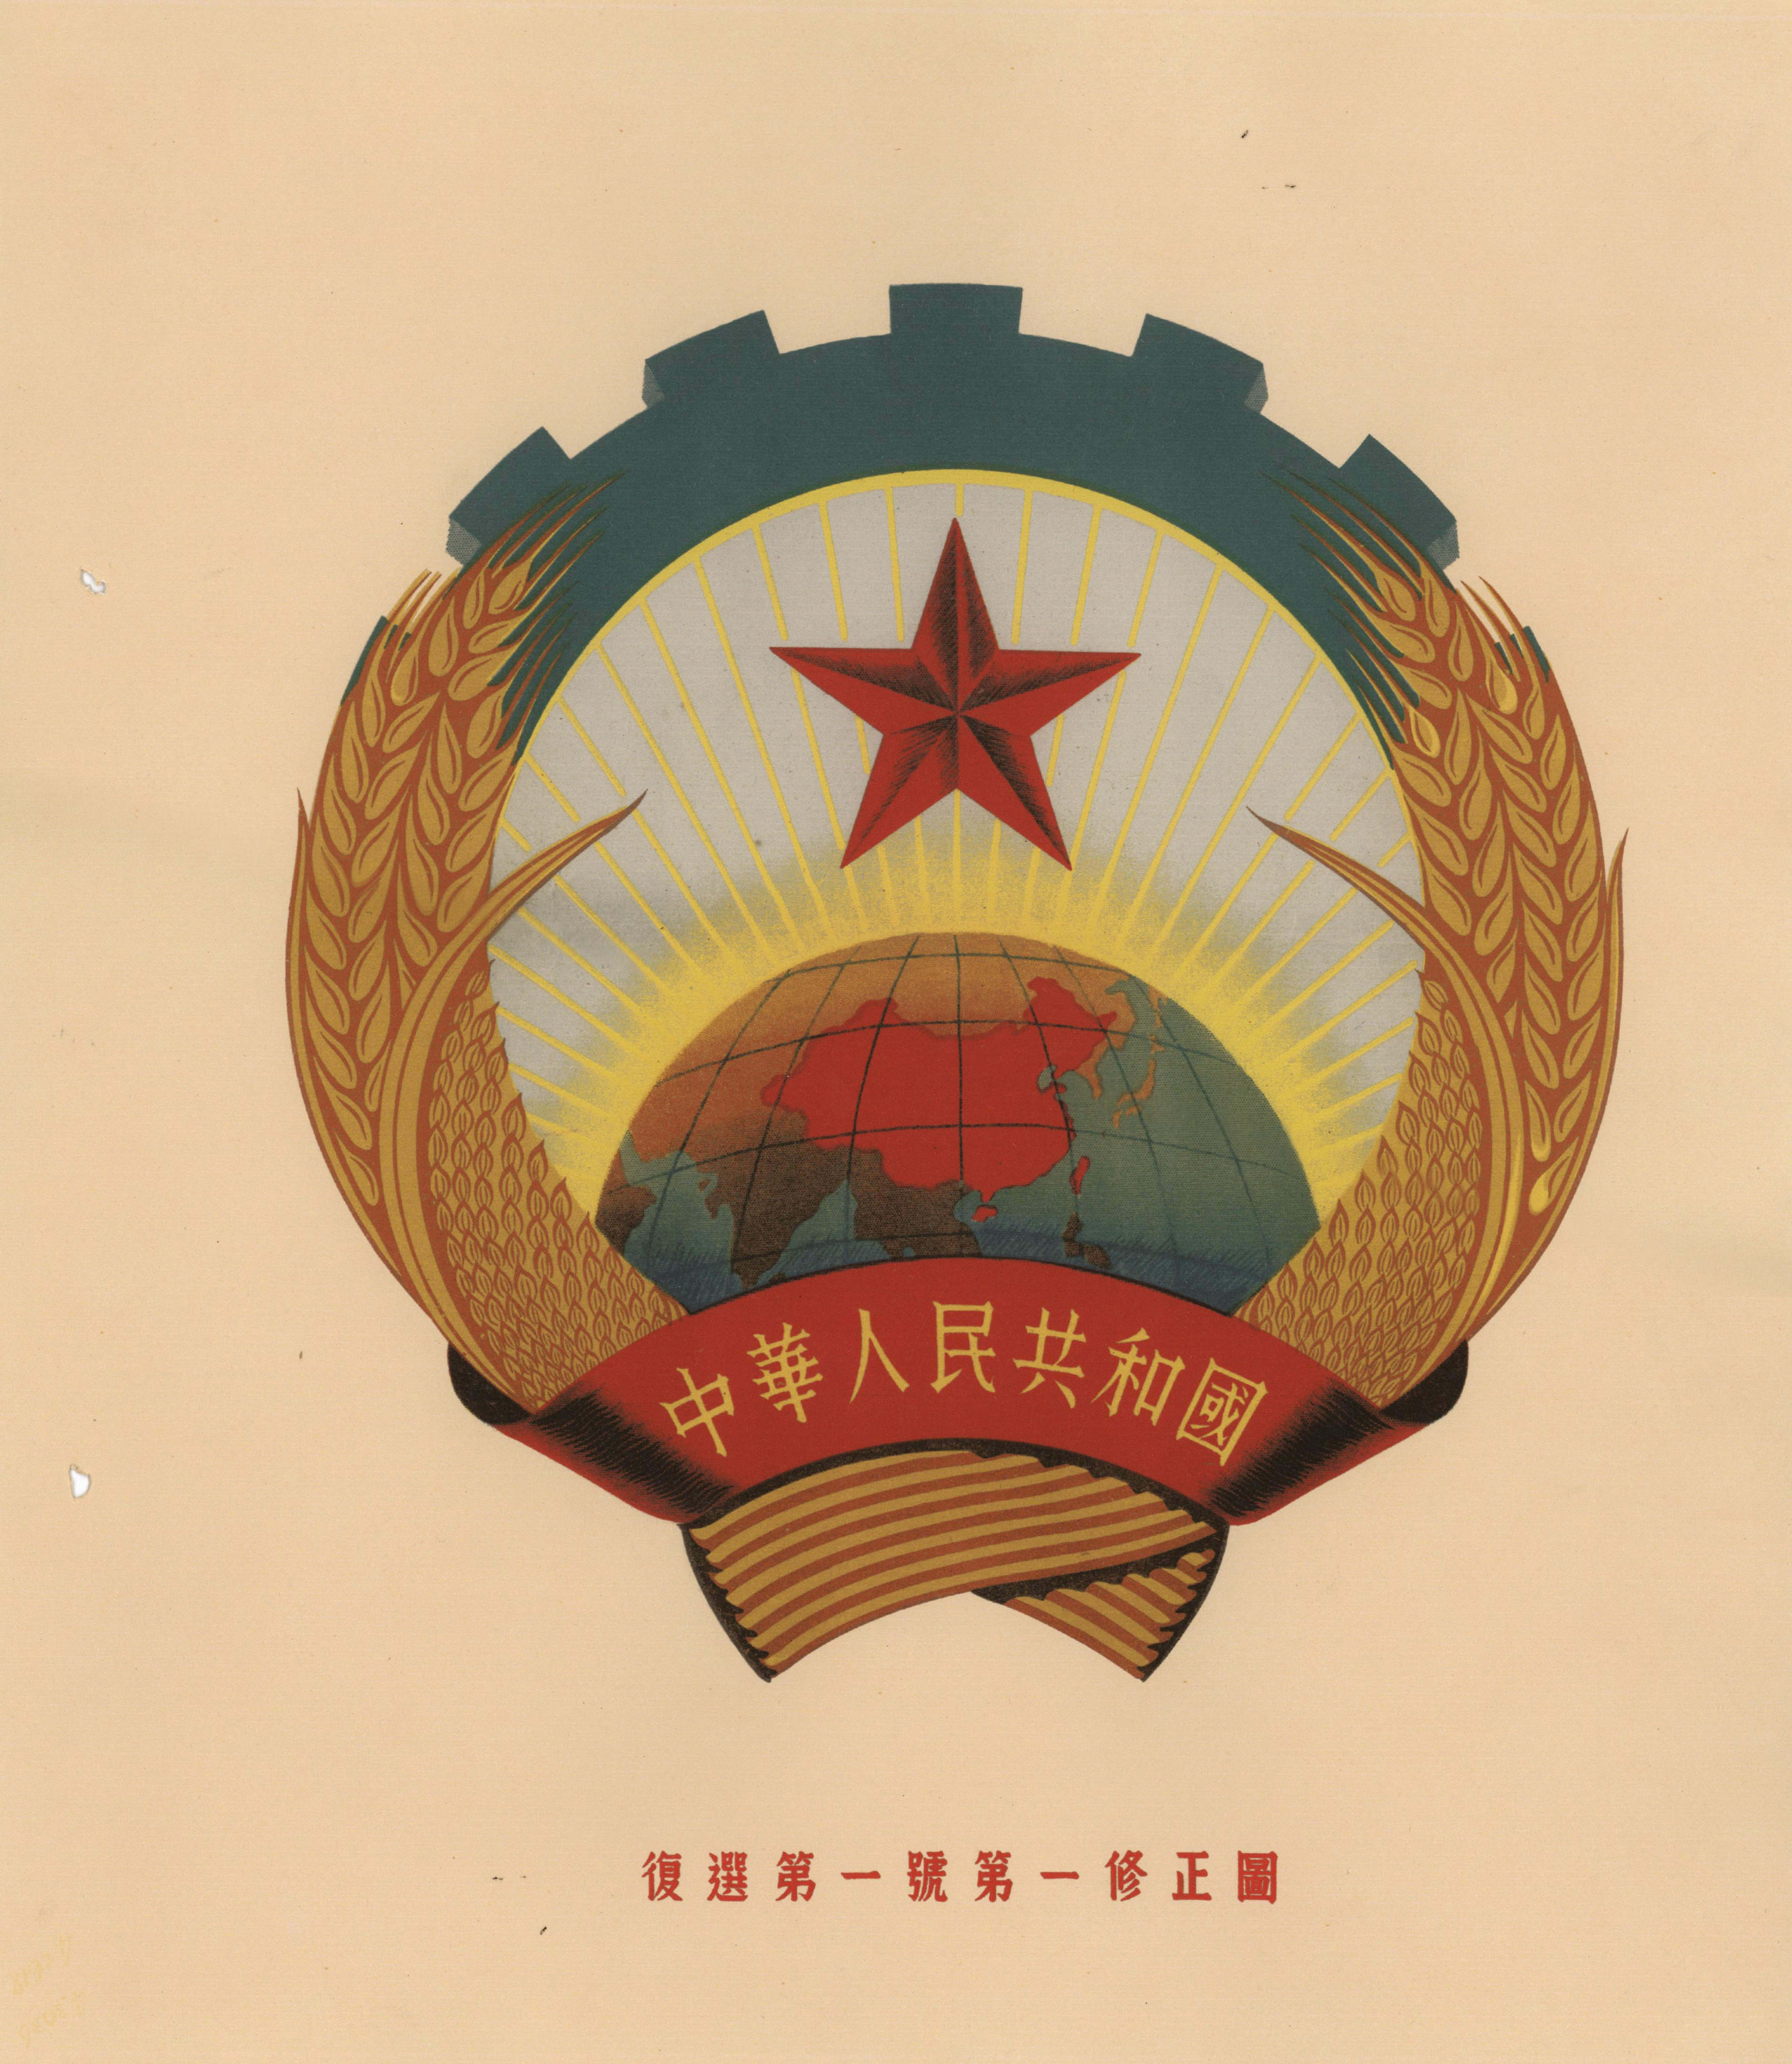 党史故事1949年6月15日,中国人民政治协商会议筹备委员会在北平正式